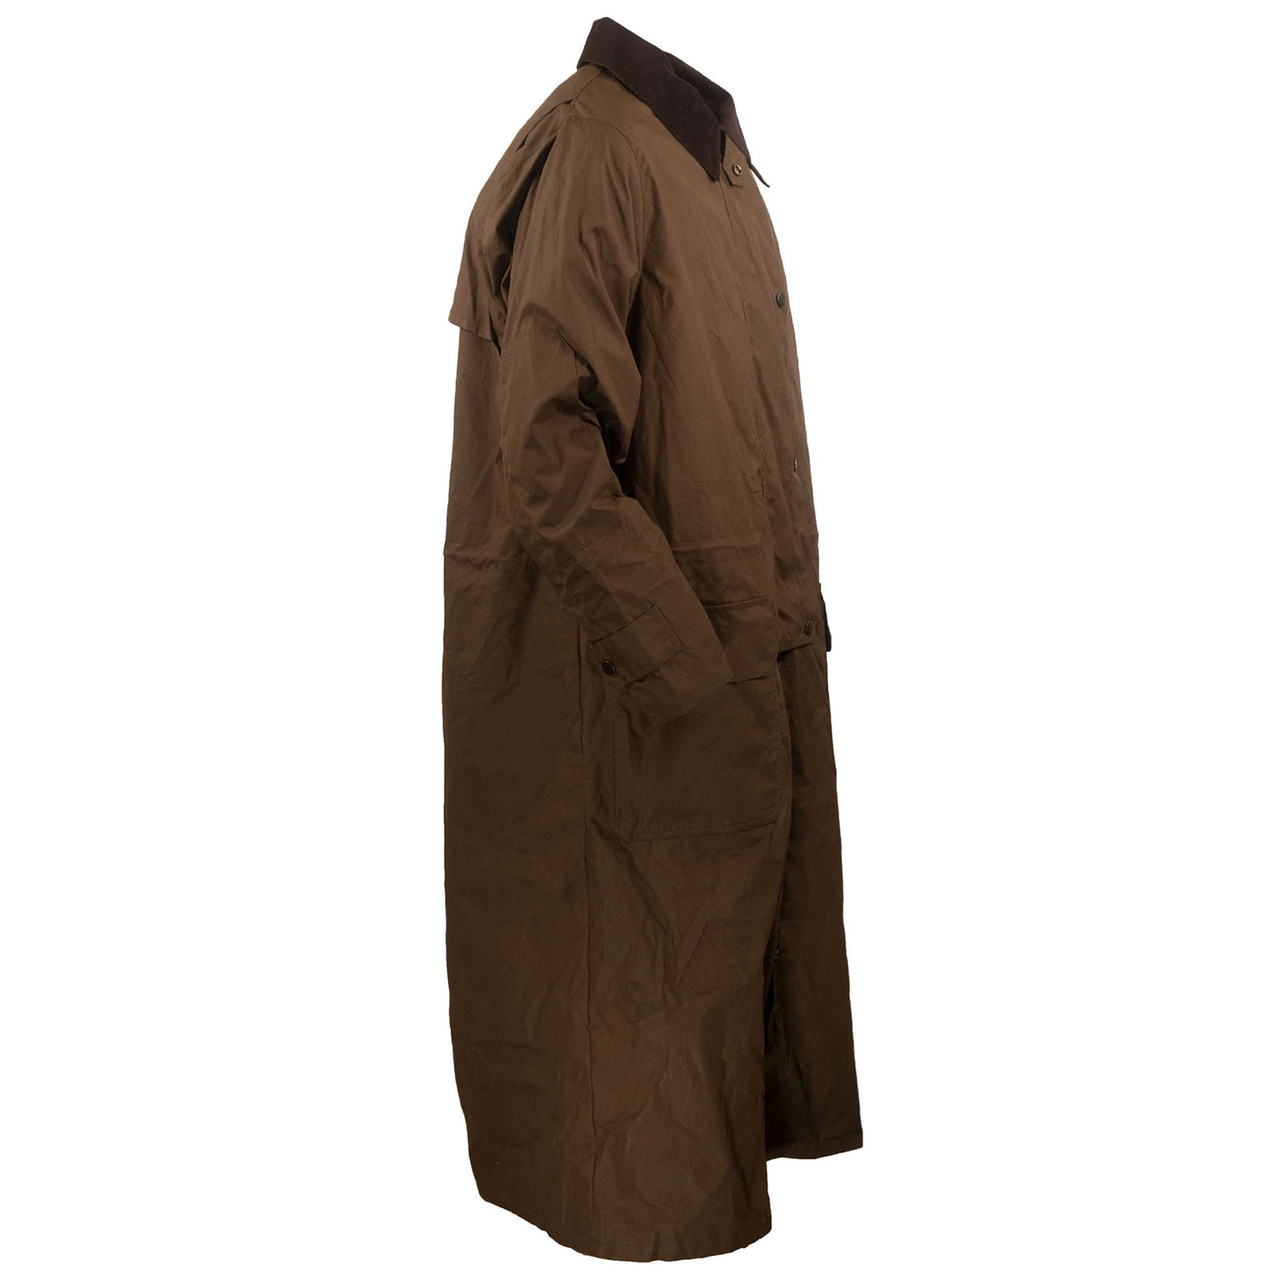 Outback Trading Company Waxed Duster Size Medium - Coats & jackets